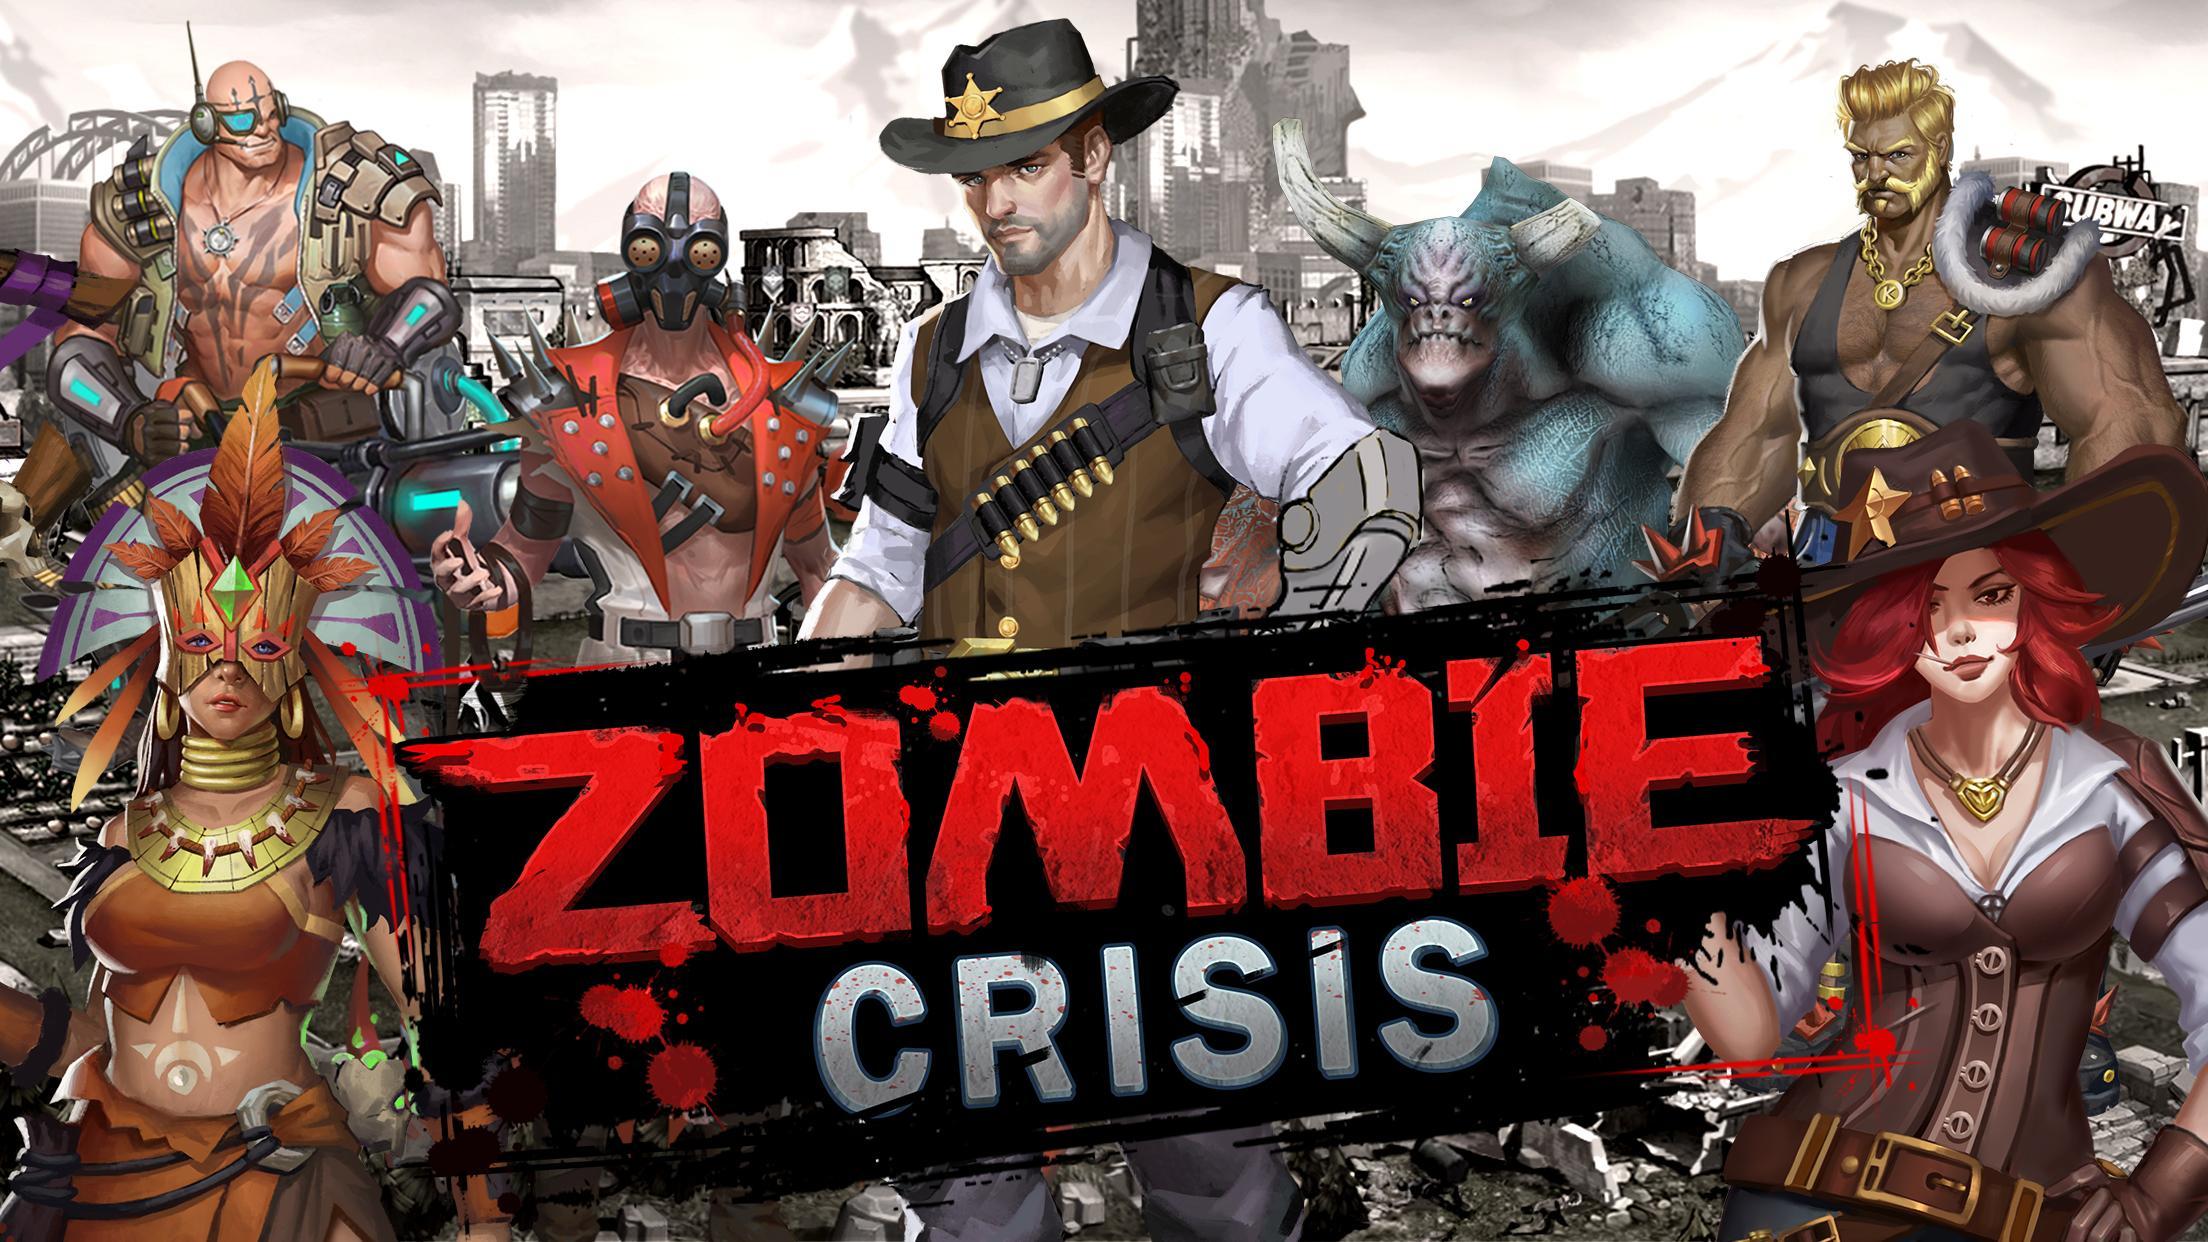 Screenshot 1 of Crisi degli zombi: gioco di ruolo di sopravvivenza 1.1.44